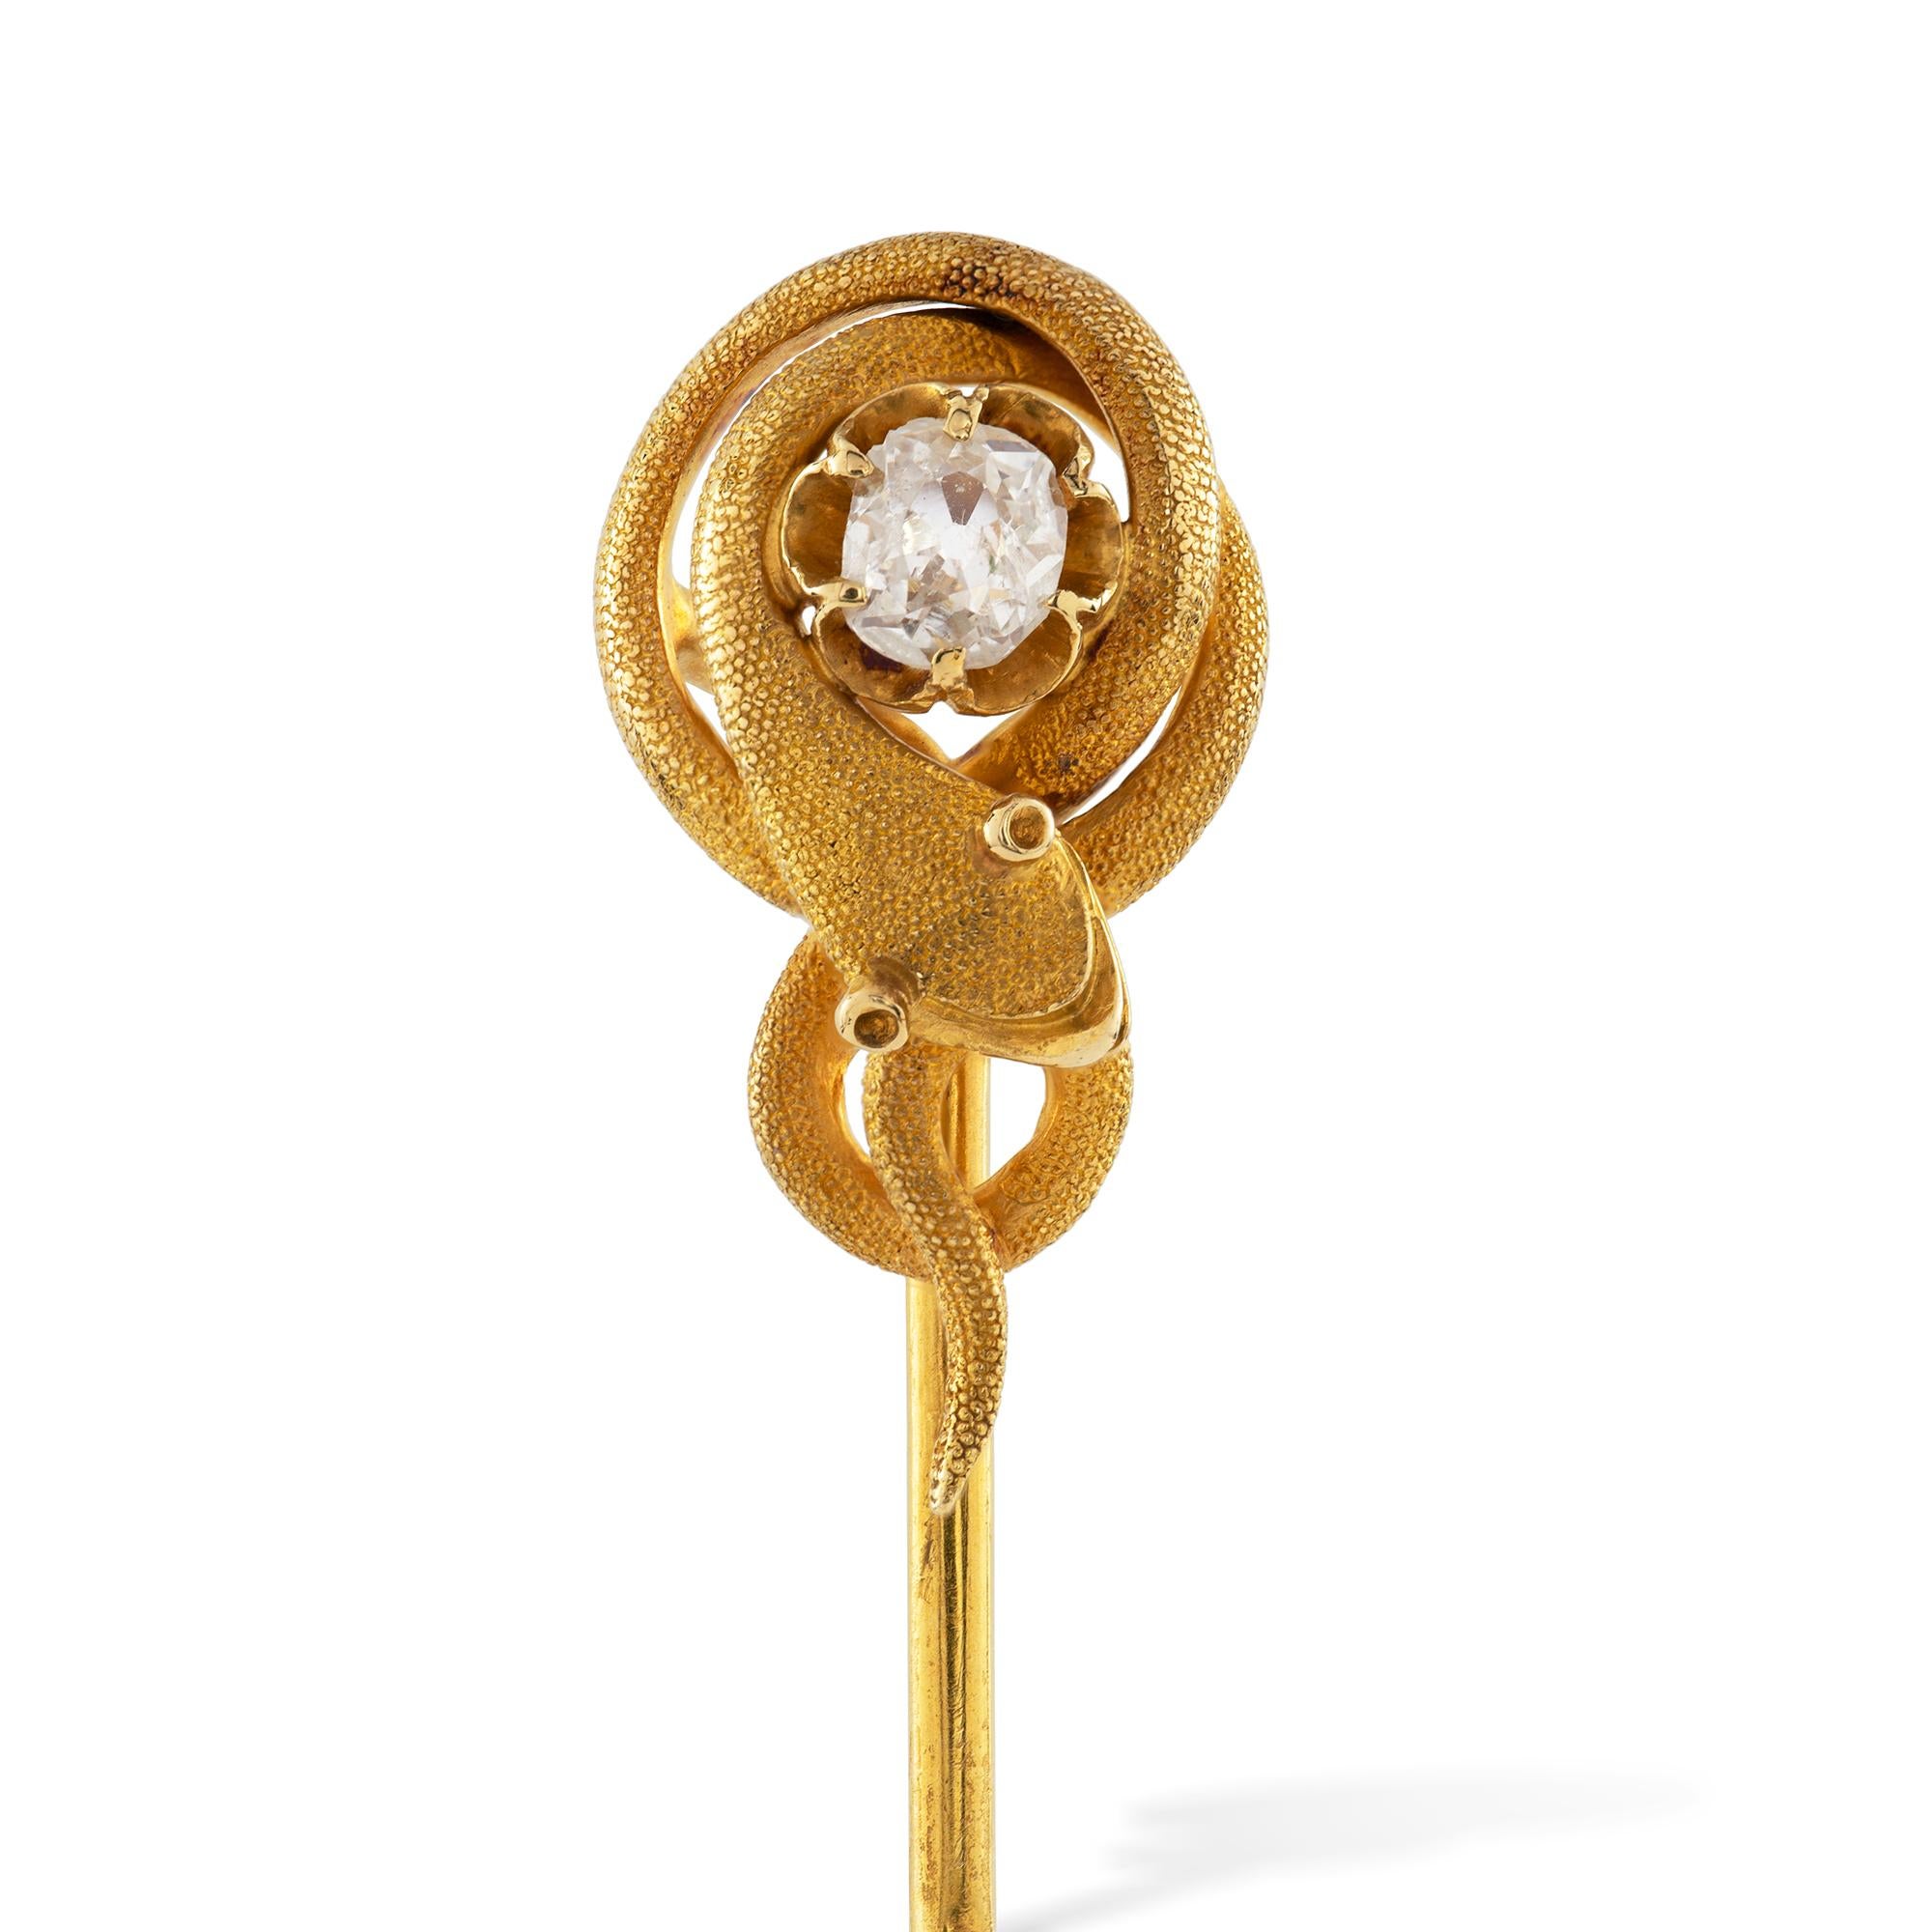 Une épingle à baguette victorienne en or, le diamant de taille européenne pesant approximativement 0,3 carats entouré d'un serpent en or enroulé avec une finition texturée, le tout en or 18ct, à une épingle à baguette en or jaune, vers 1880, la